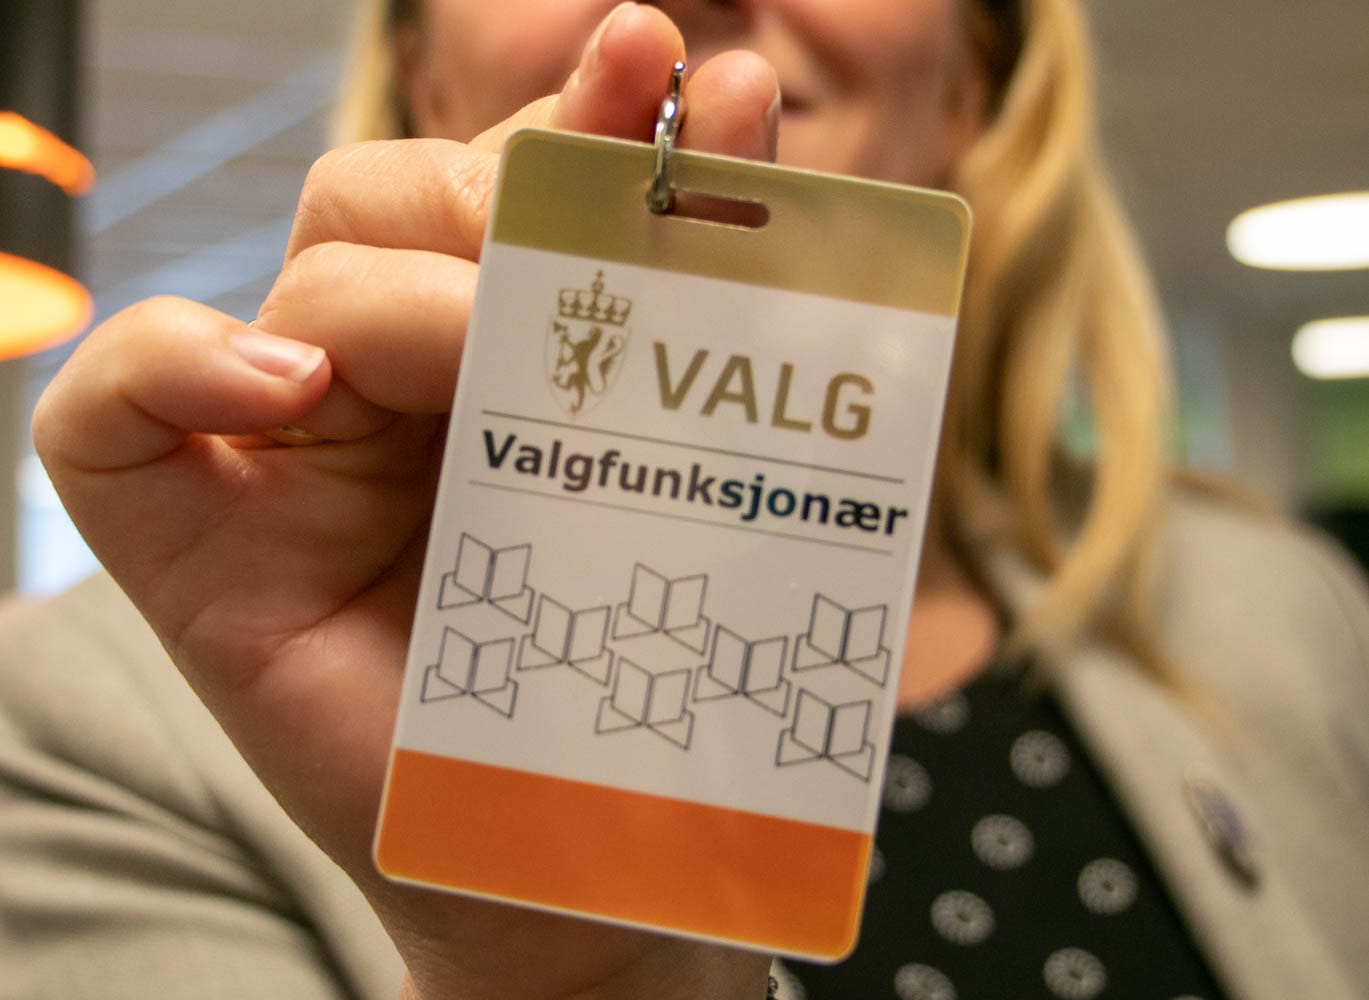 Monica Myrvold Berg viser frem et valgfunksjonærkort fra Drammen kommune.